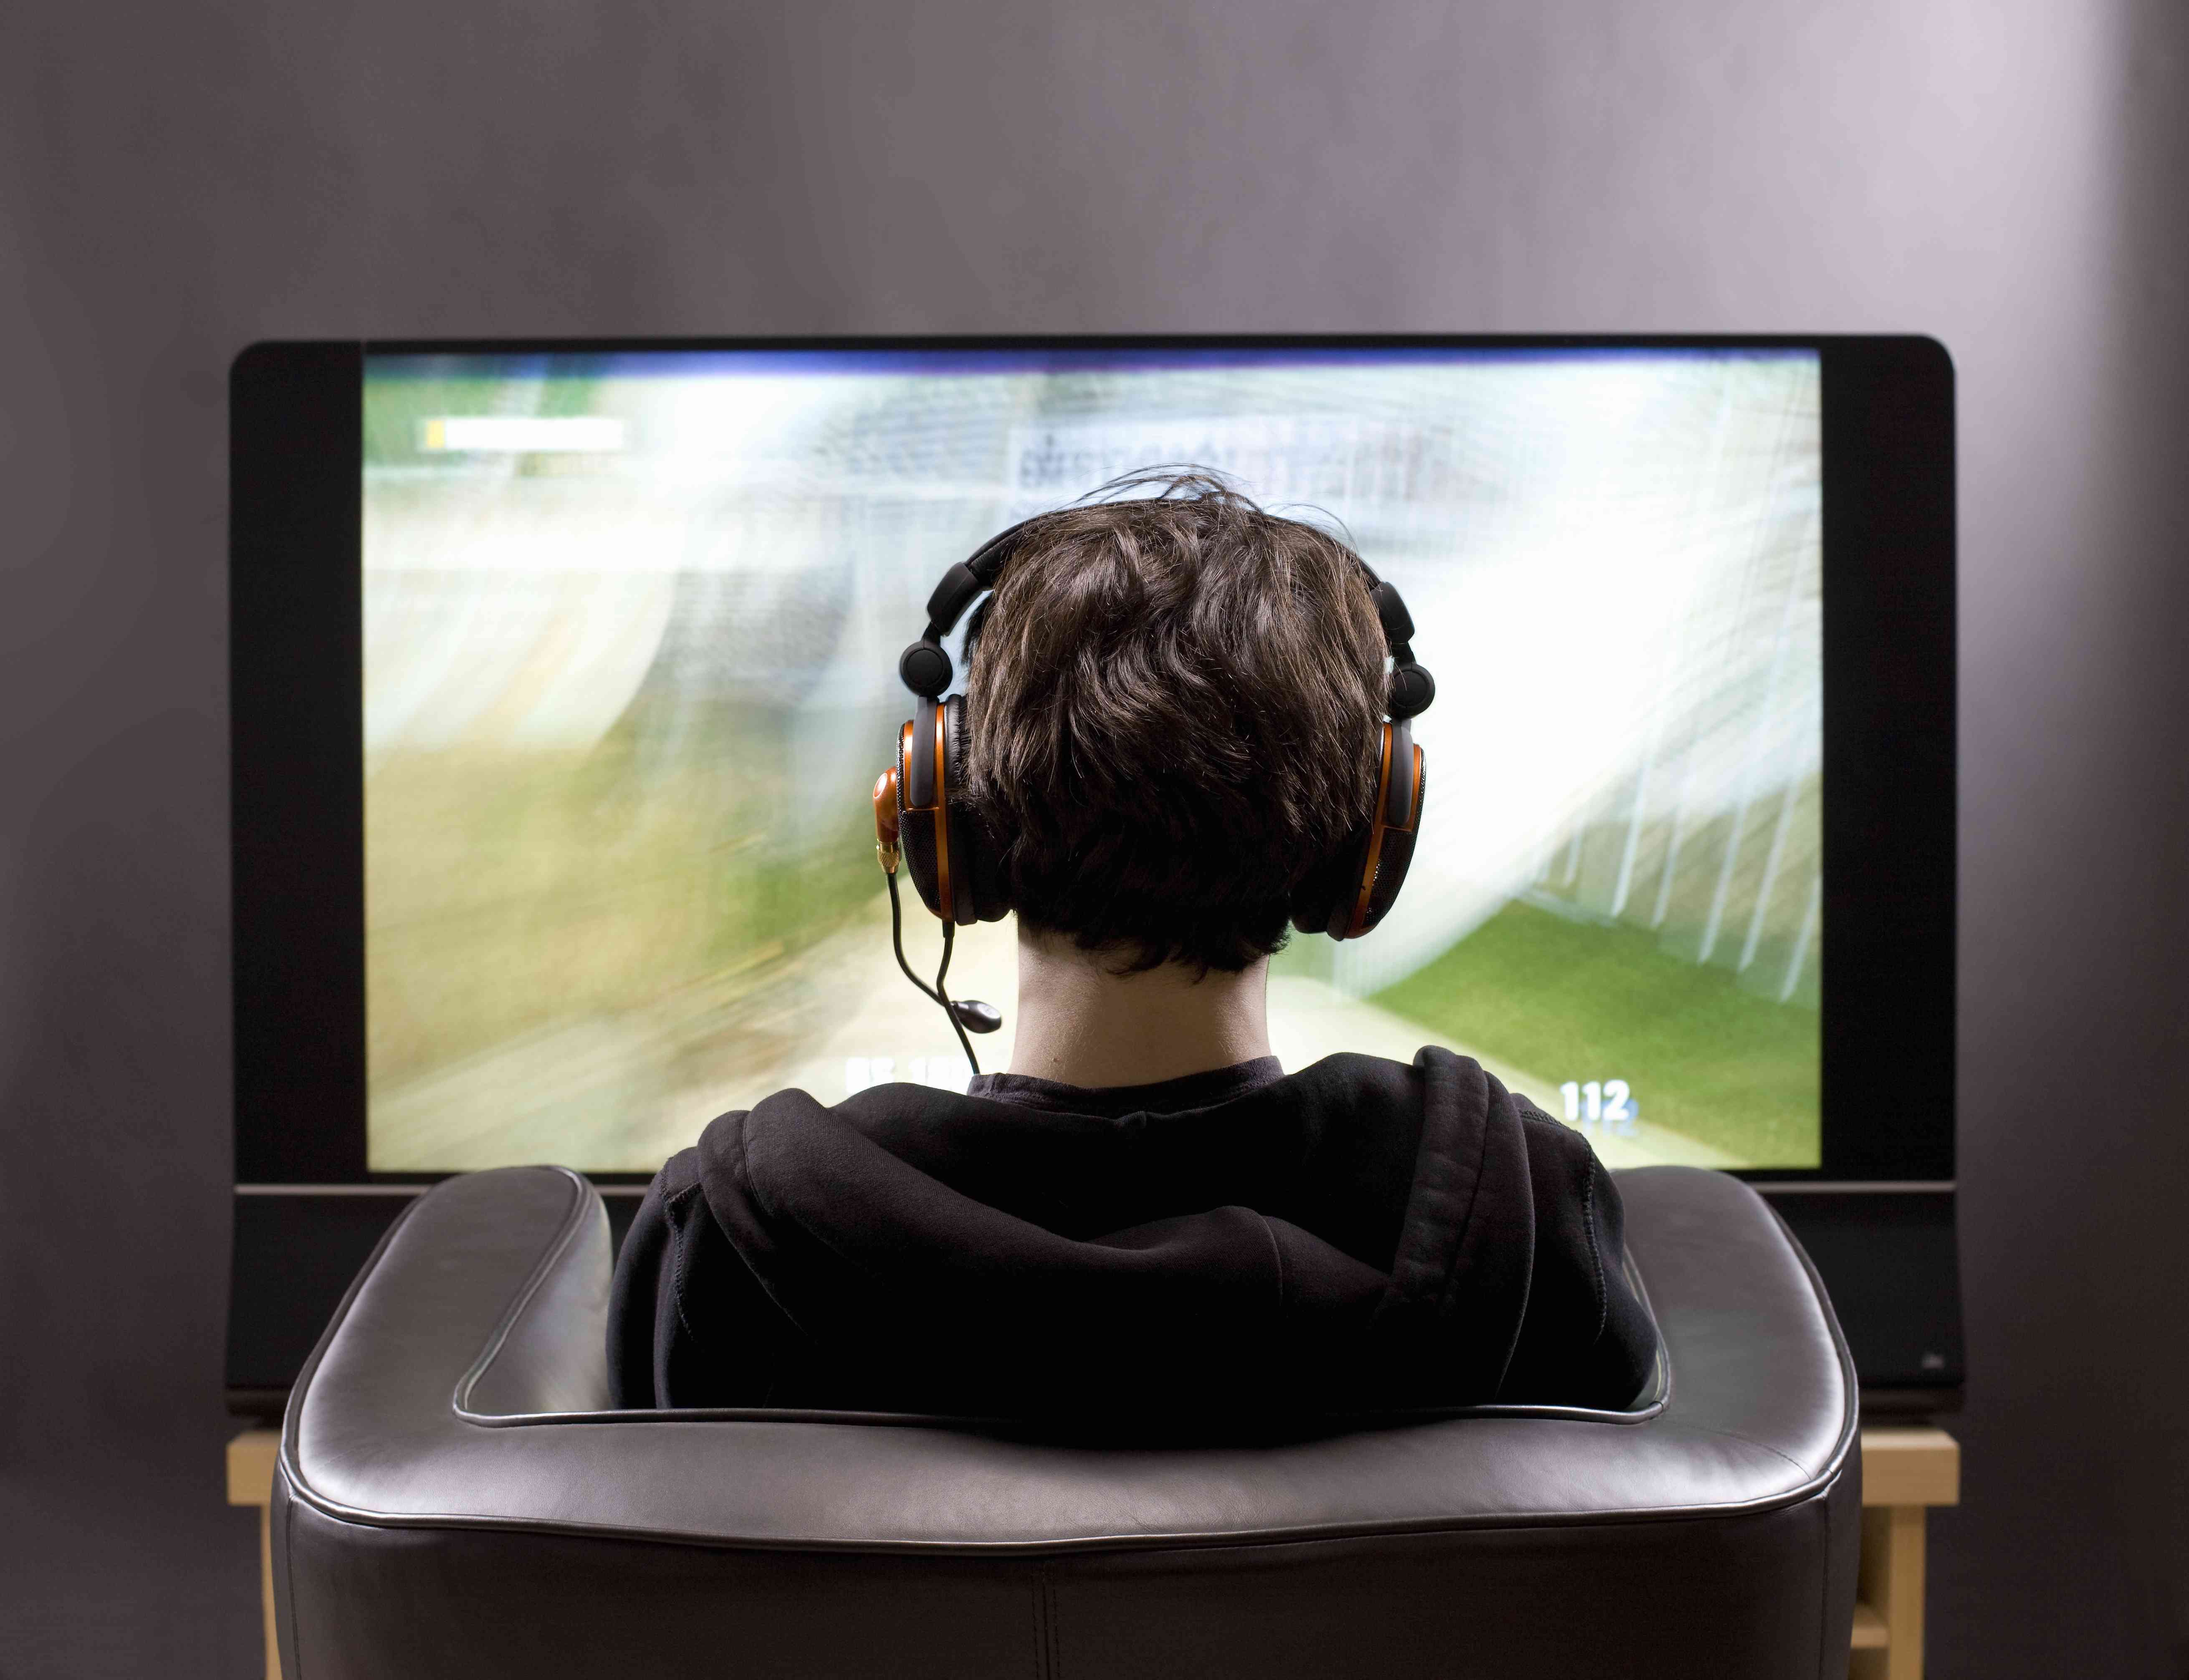 Adolescente sentado em frente à TV jogando videogame